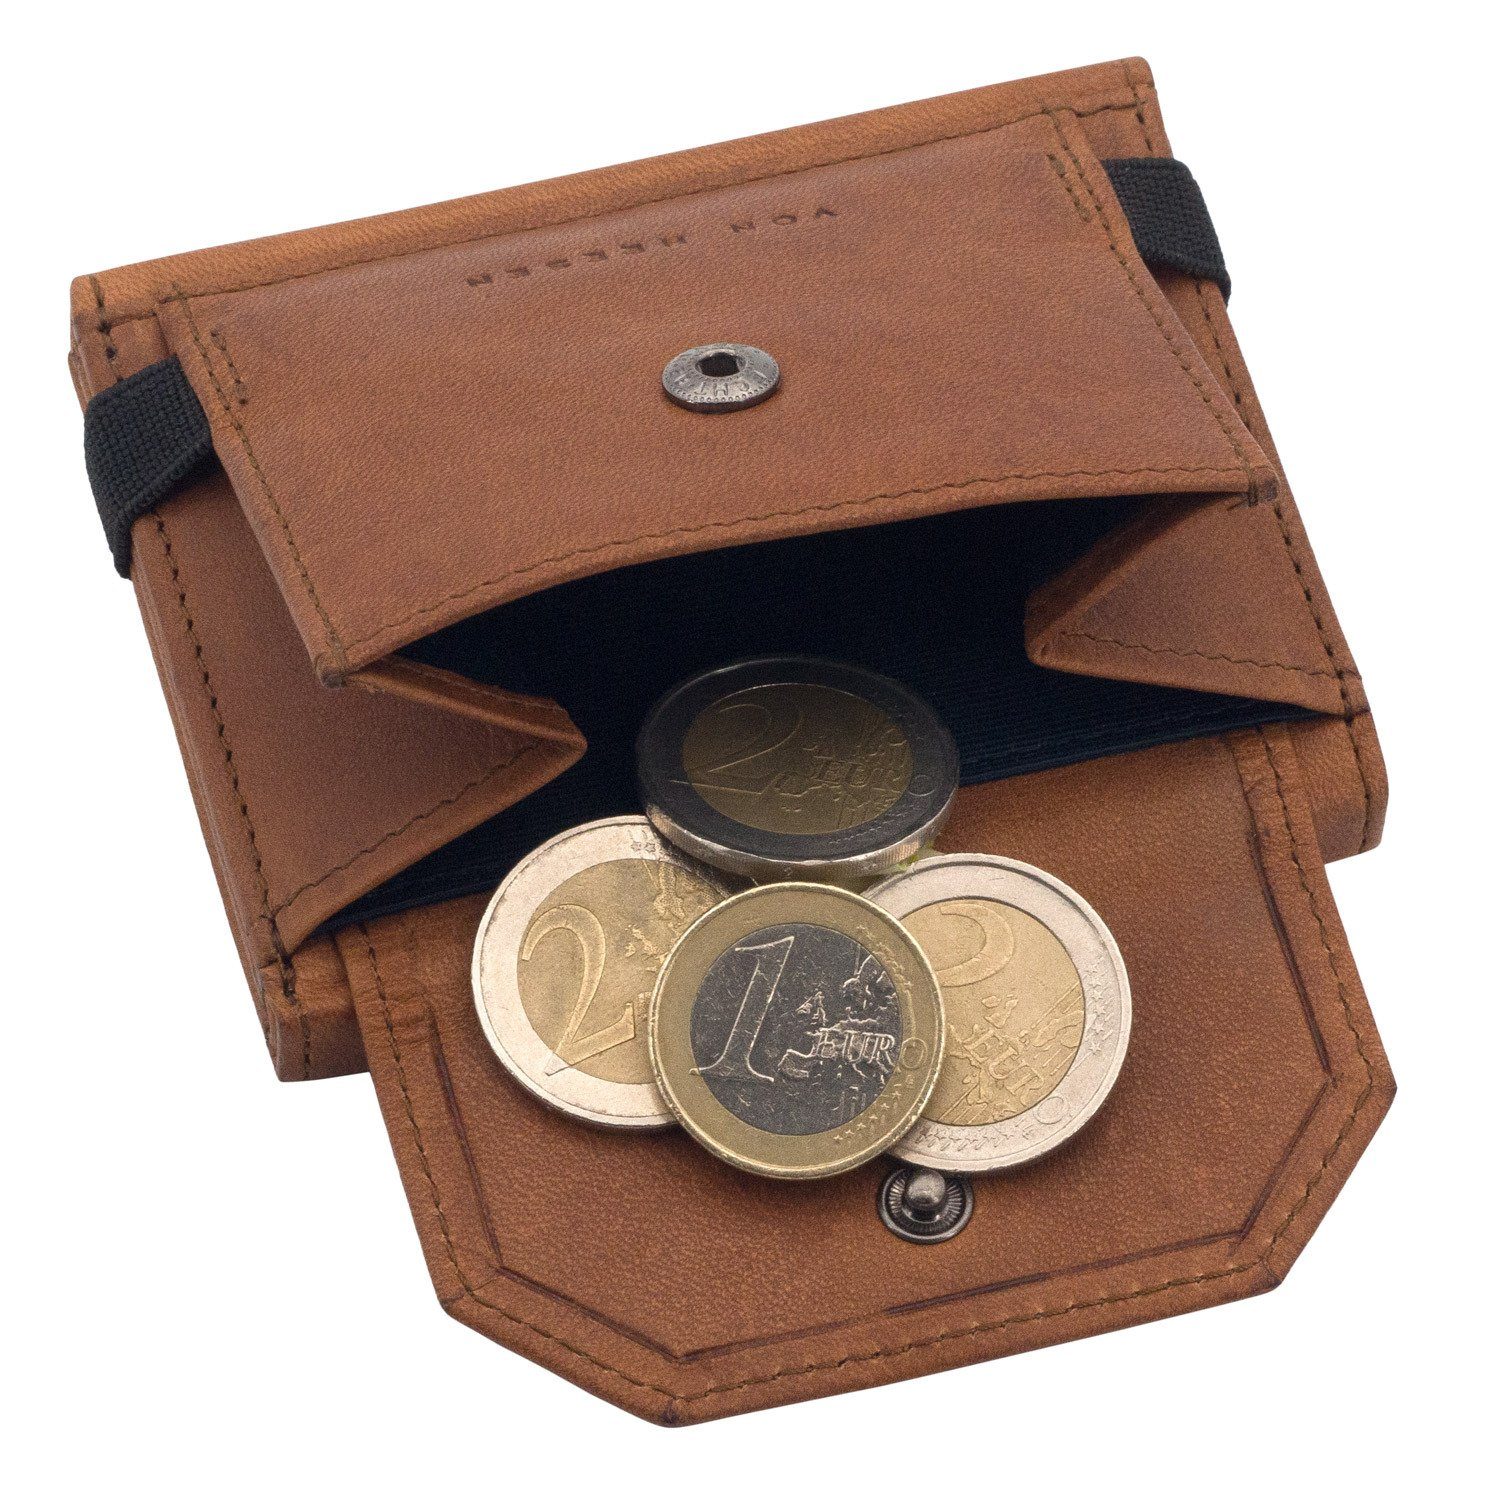 Slim & XL-Münzfach, Portemonnaie Geldbörse Cognac-Braun HEESEN Wallet (braun) & Wallet Geldbeutel VON Whizz Geschenkbox inkl. RFID-Schutz Leder Kartenfächer 5 mit